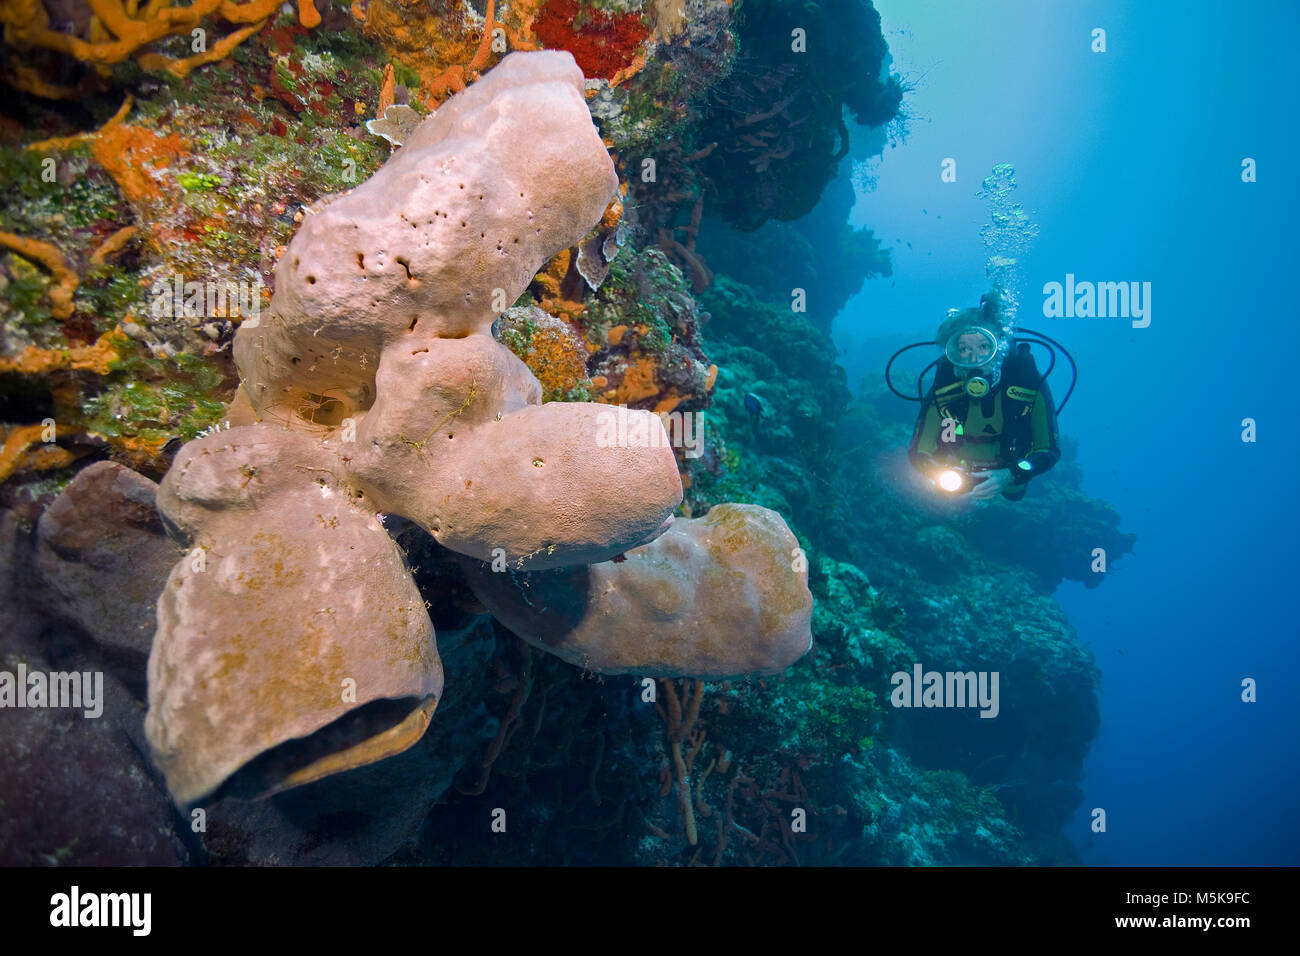 Taucher an einem karibischen Korallenriffs mit bunten Schwämmen, Insel Cozumel, Mexiko, Karibik Stockfoto